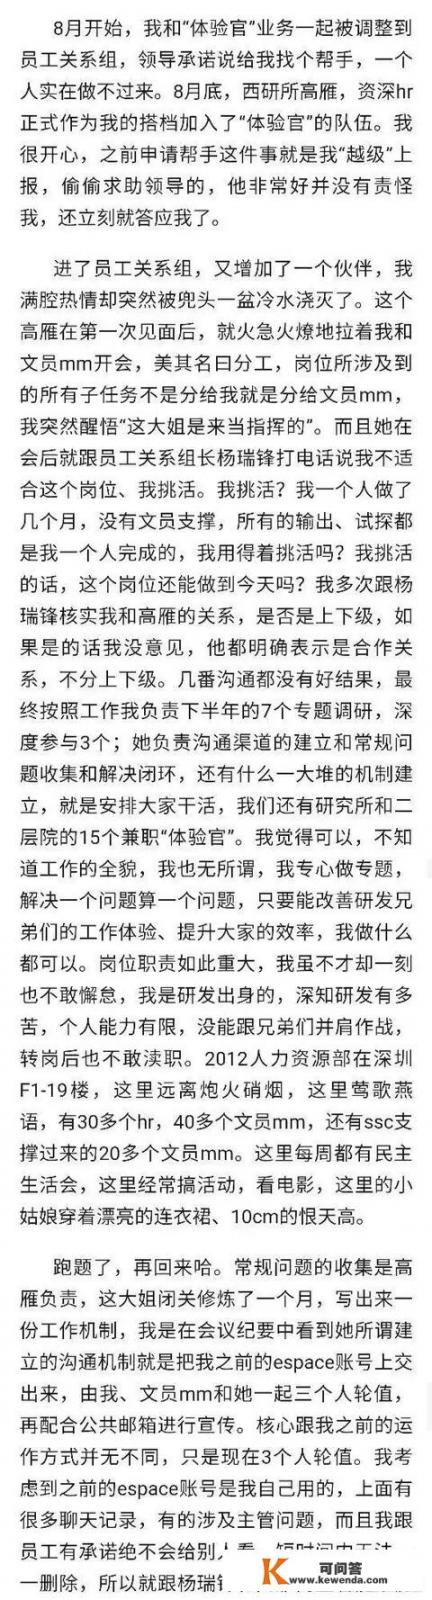 如何看待华为HR胡玲于2019.10.30在华为内部论坛心声社区的发帖